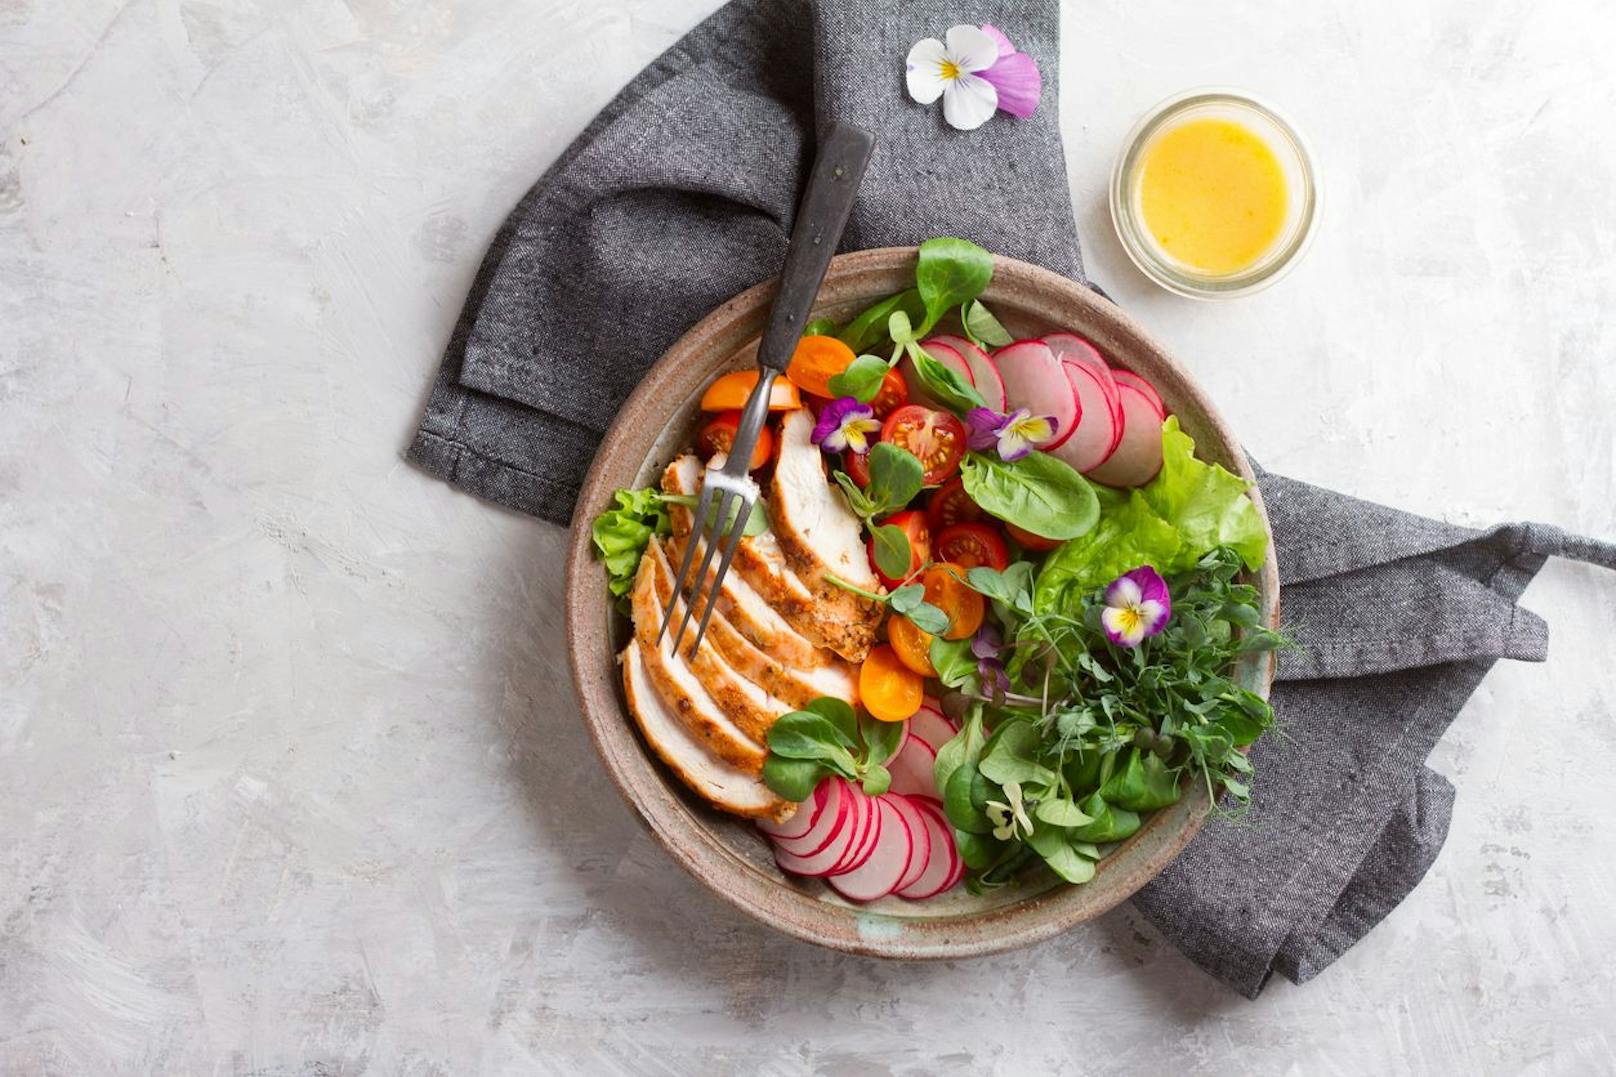 Ein leichter Salat mit Huhn stillt den Hunger und ist leicht verdaulich.